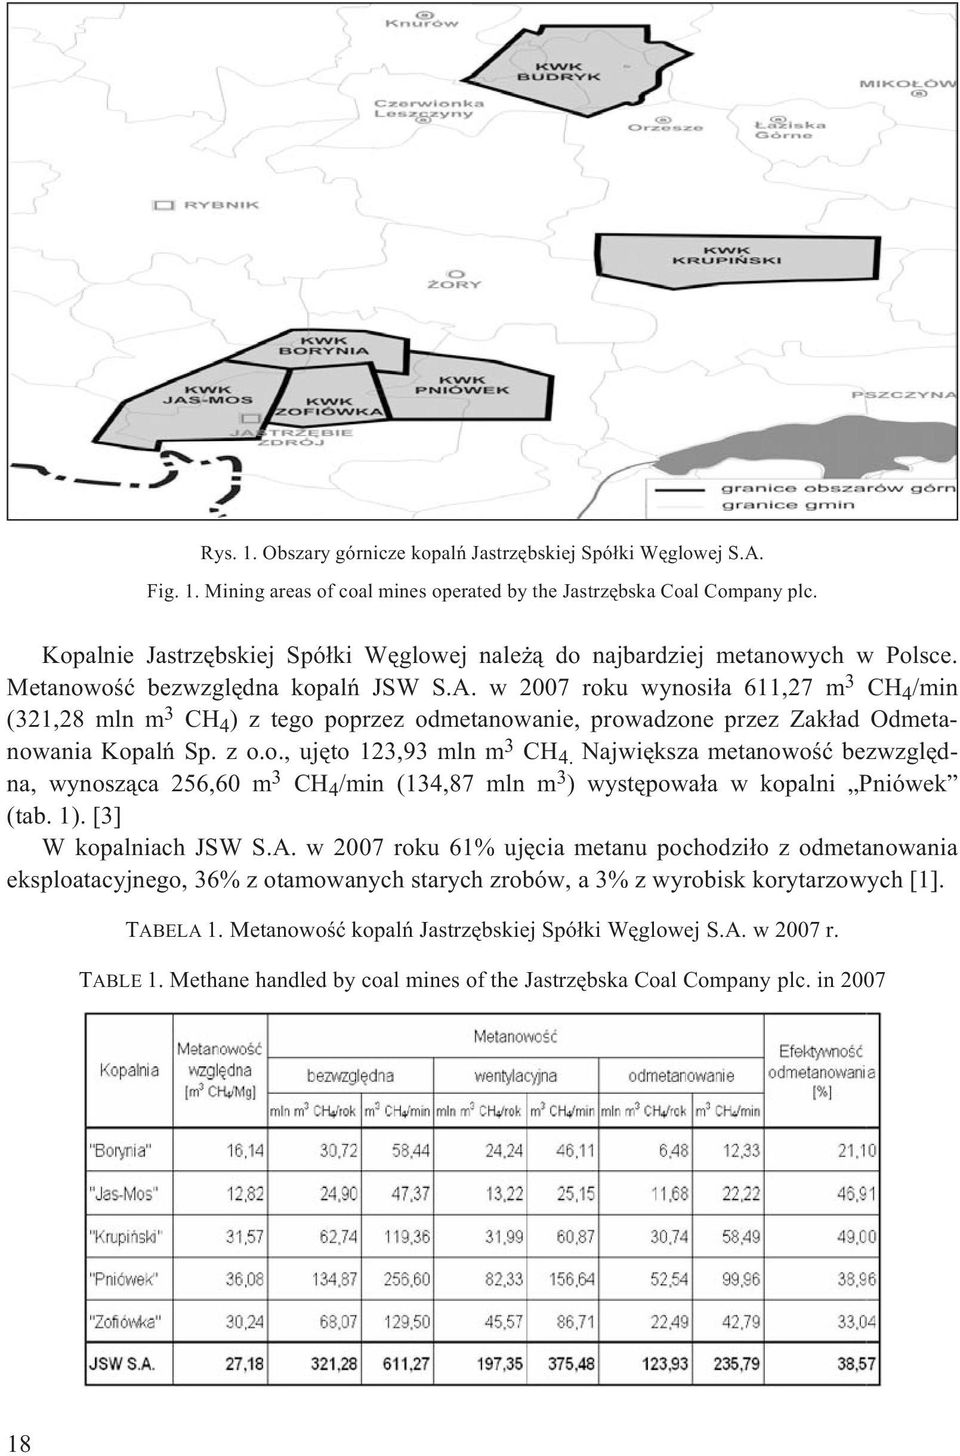 w 2007 roku wynosi³a 611,27 m 3 CH 4 /min (321,28 mln m 3 CH 4 ) z tego poprzez odmetanowanie, prowadzone przez Zak³ad Odmetanowania Kopalñ Sp. z o.o., ujêto 123,93 mln m 3 CH 4.